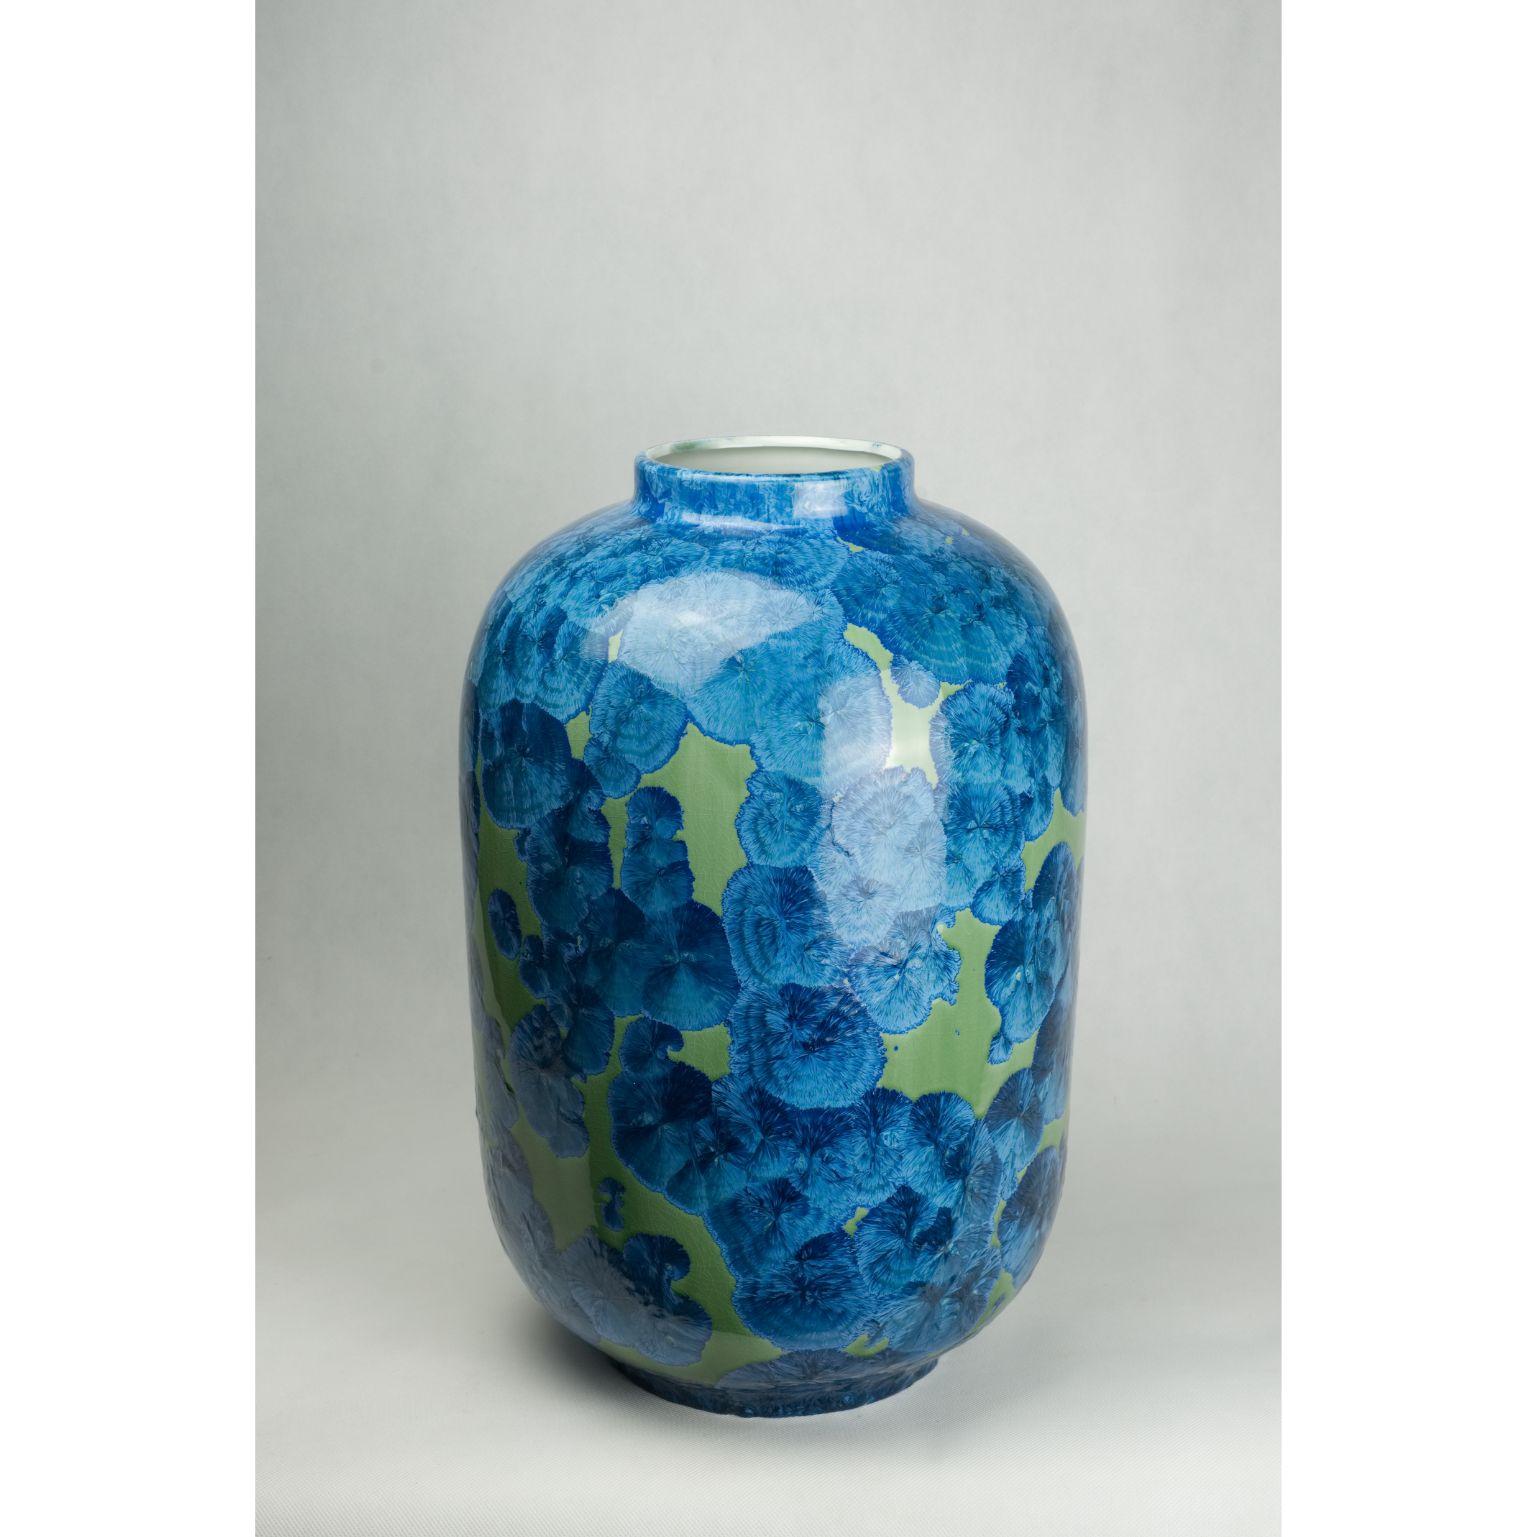 Vase Band 5 von Milan Pekar
Abmessungen: D 32 x H 48 cm
MATERIALIEN: Glasur, Porzellan

Handgefertigt in der Tschechischen Republik. 

Auch erhältlich: verschiedene Farben und Muster

Gründung eines eigenen Studios im August 2009 - Schwerpunkt: